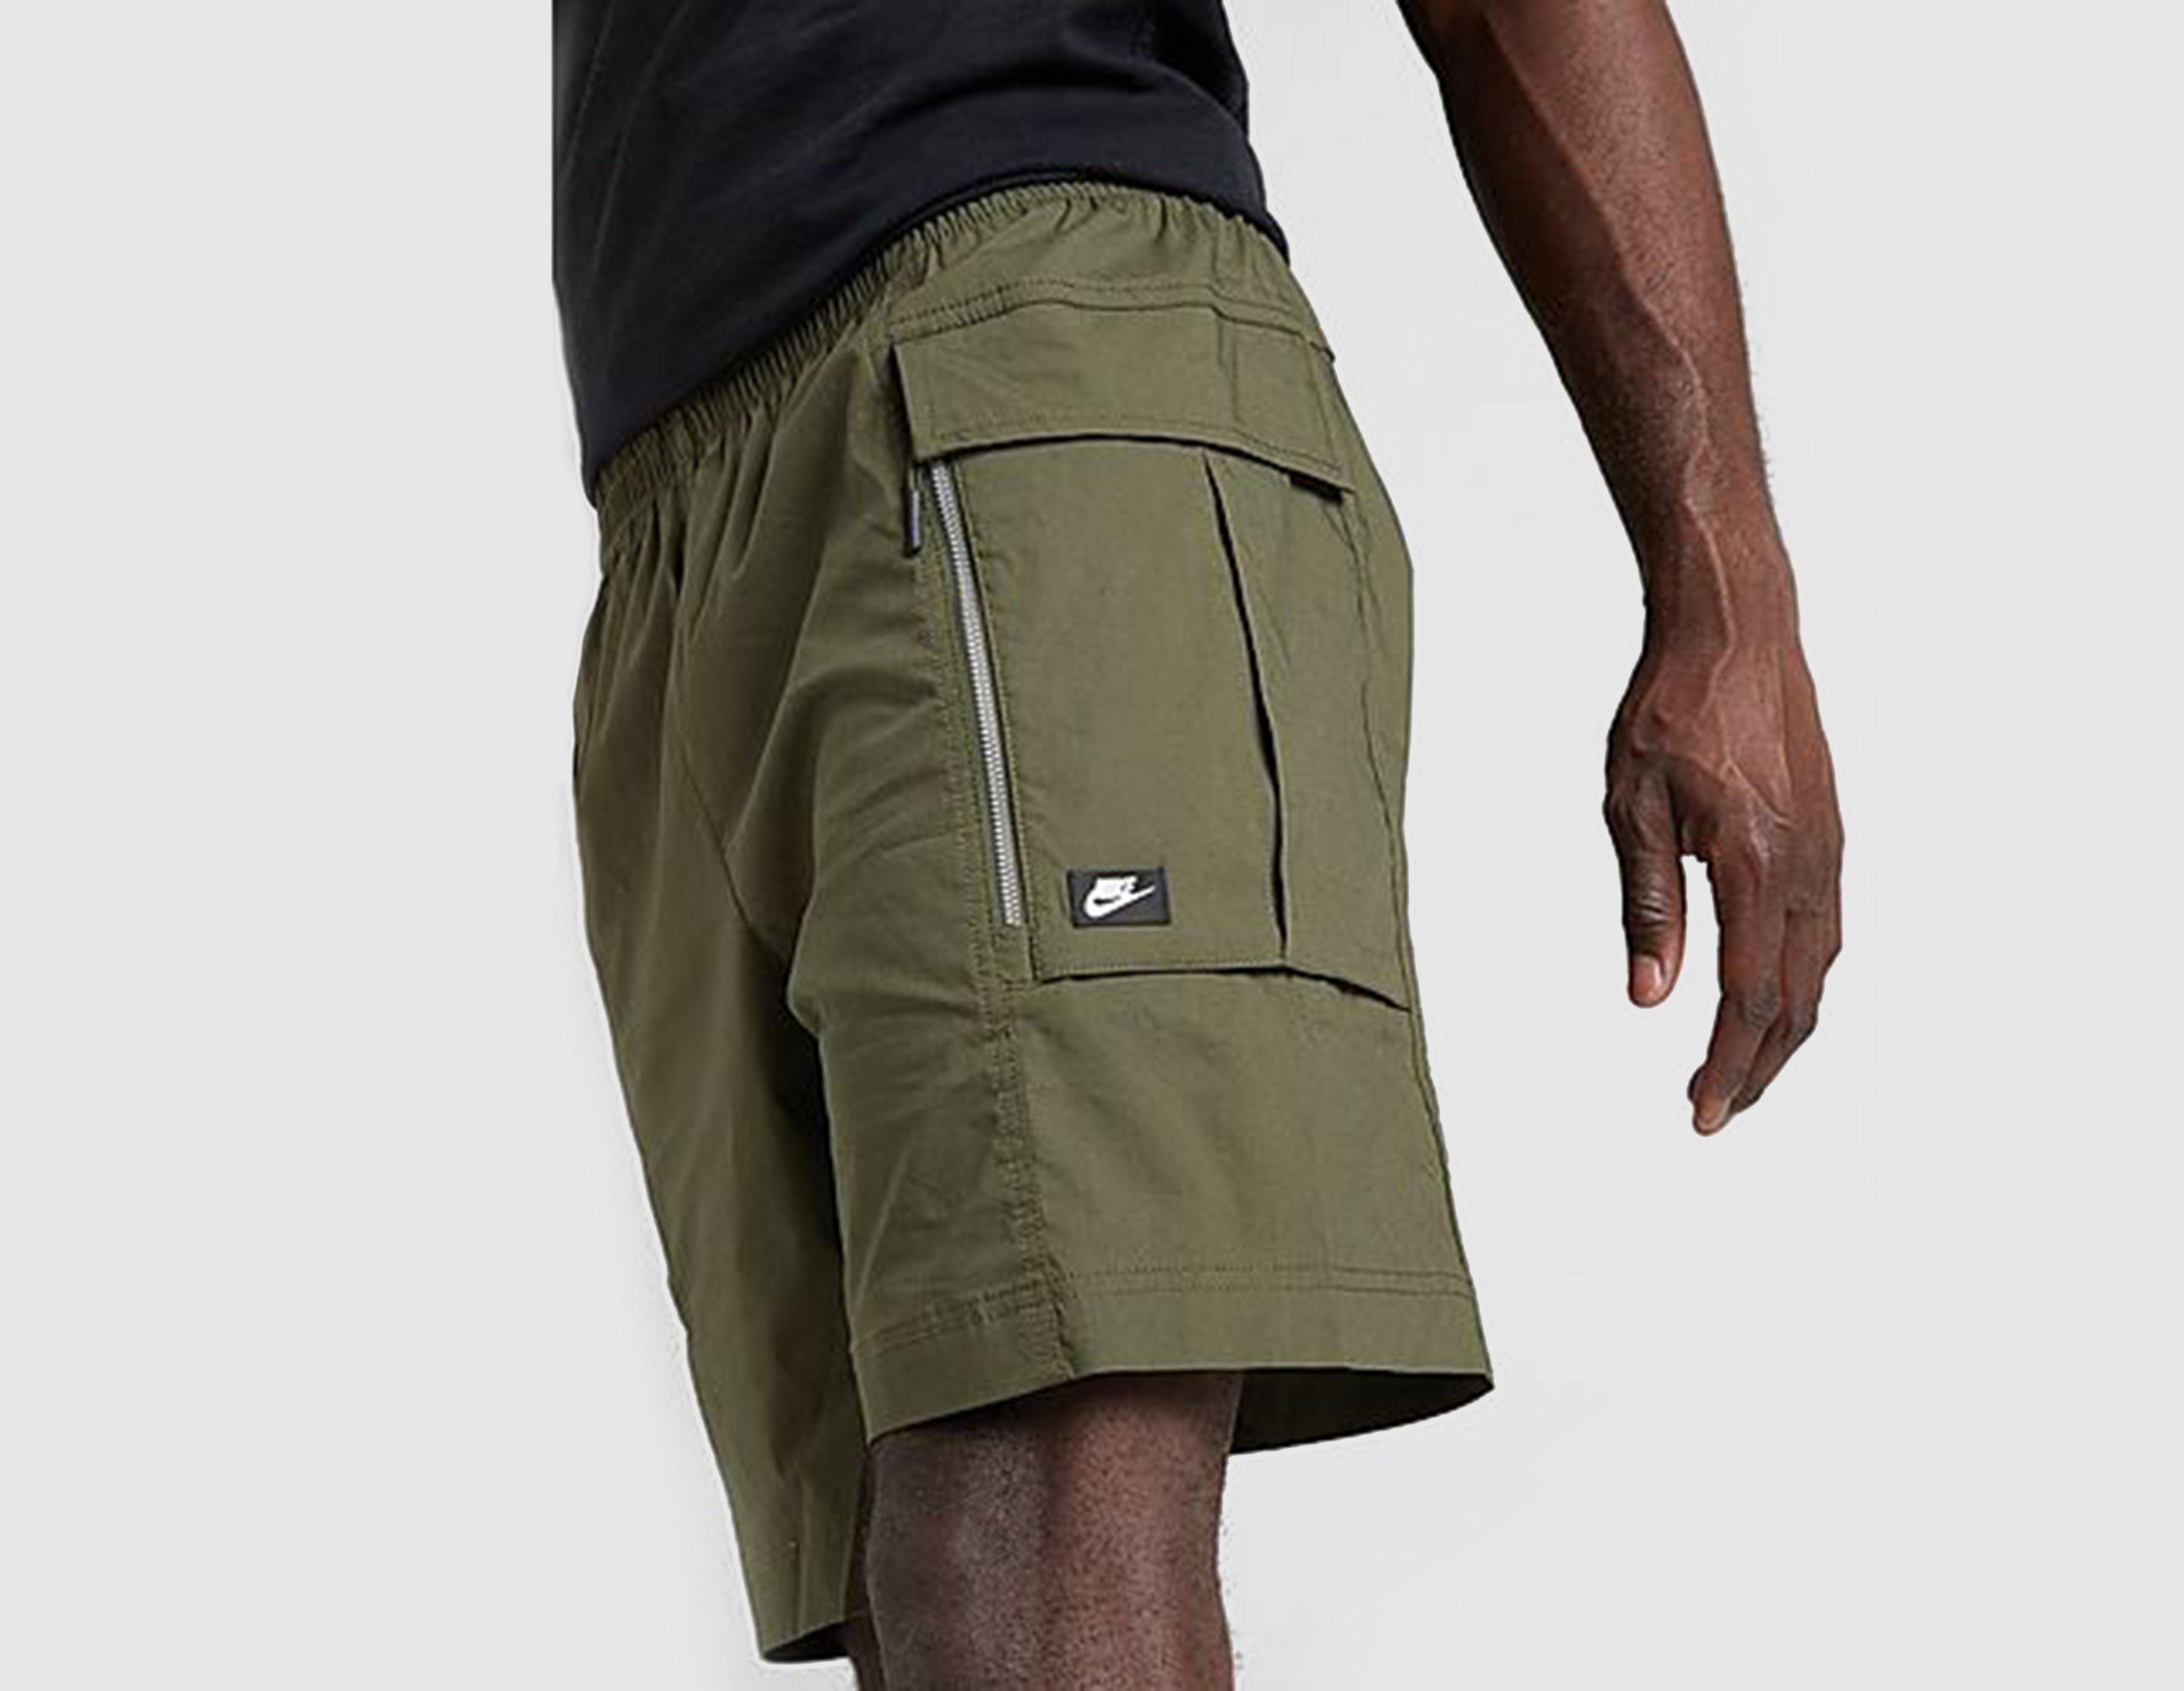 nike cargo shorts